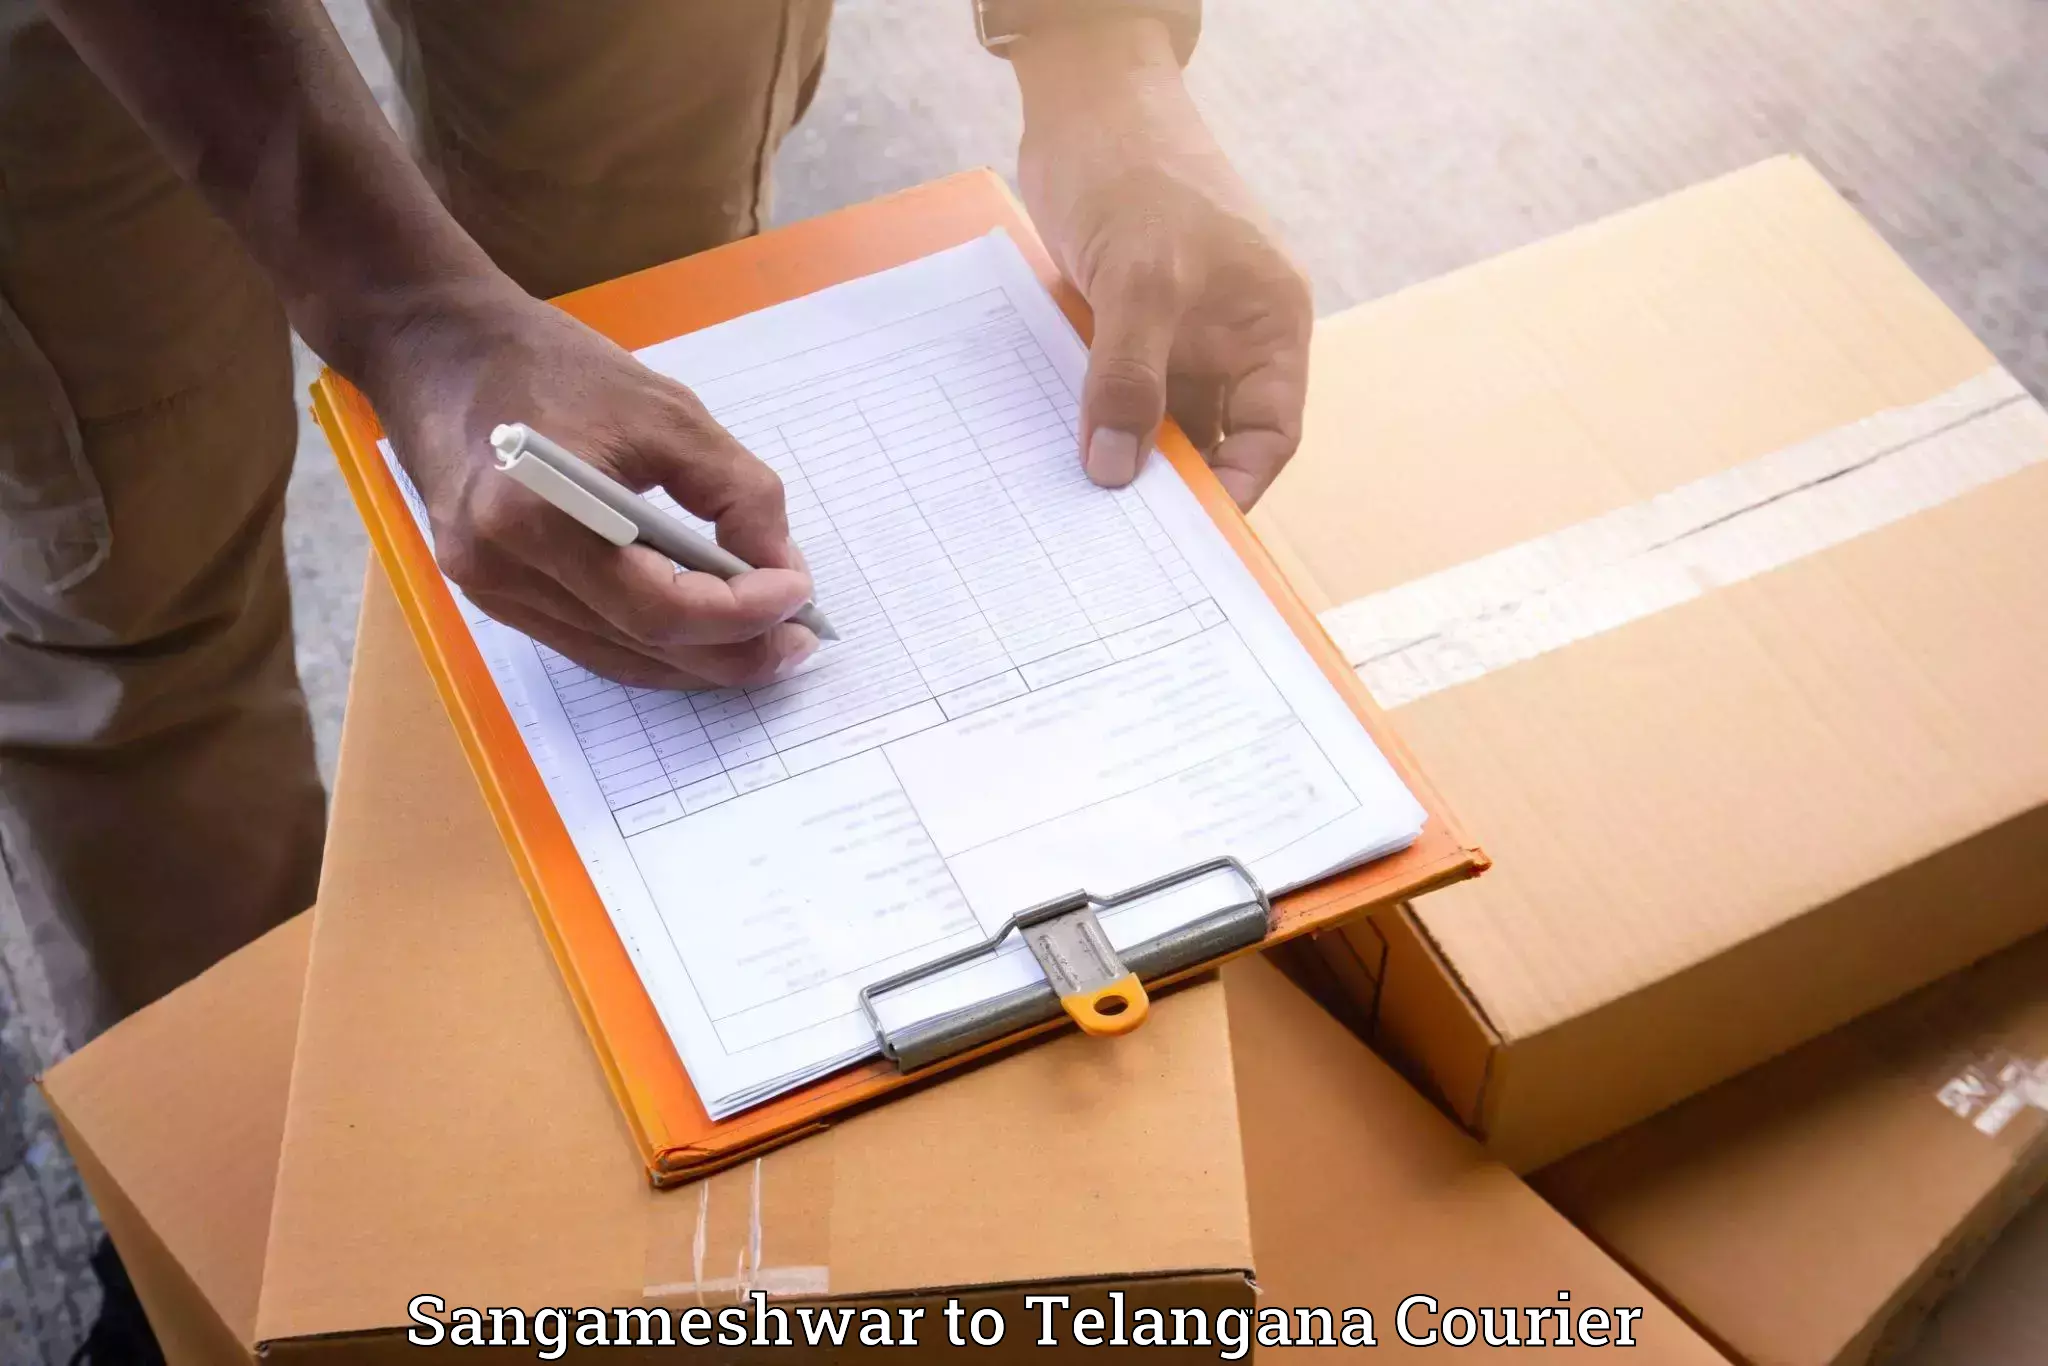 Furniture moving services Sangameshwar to Manuguru